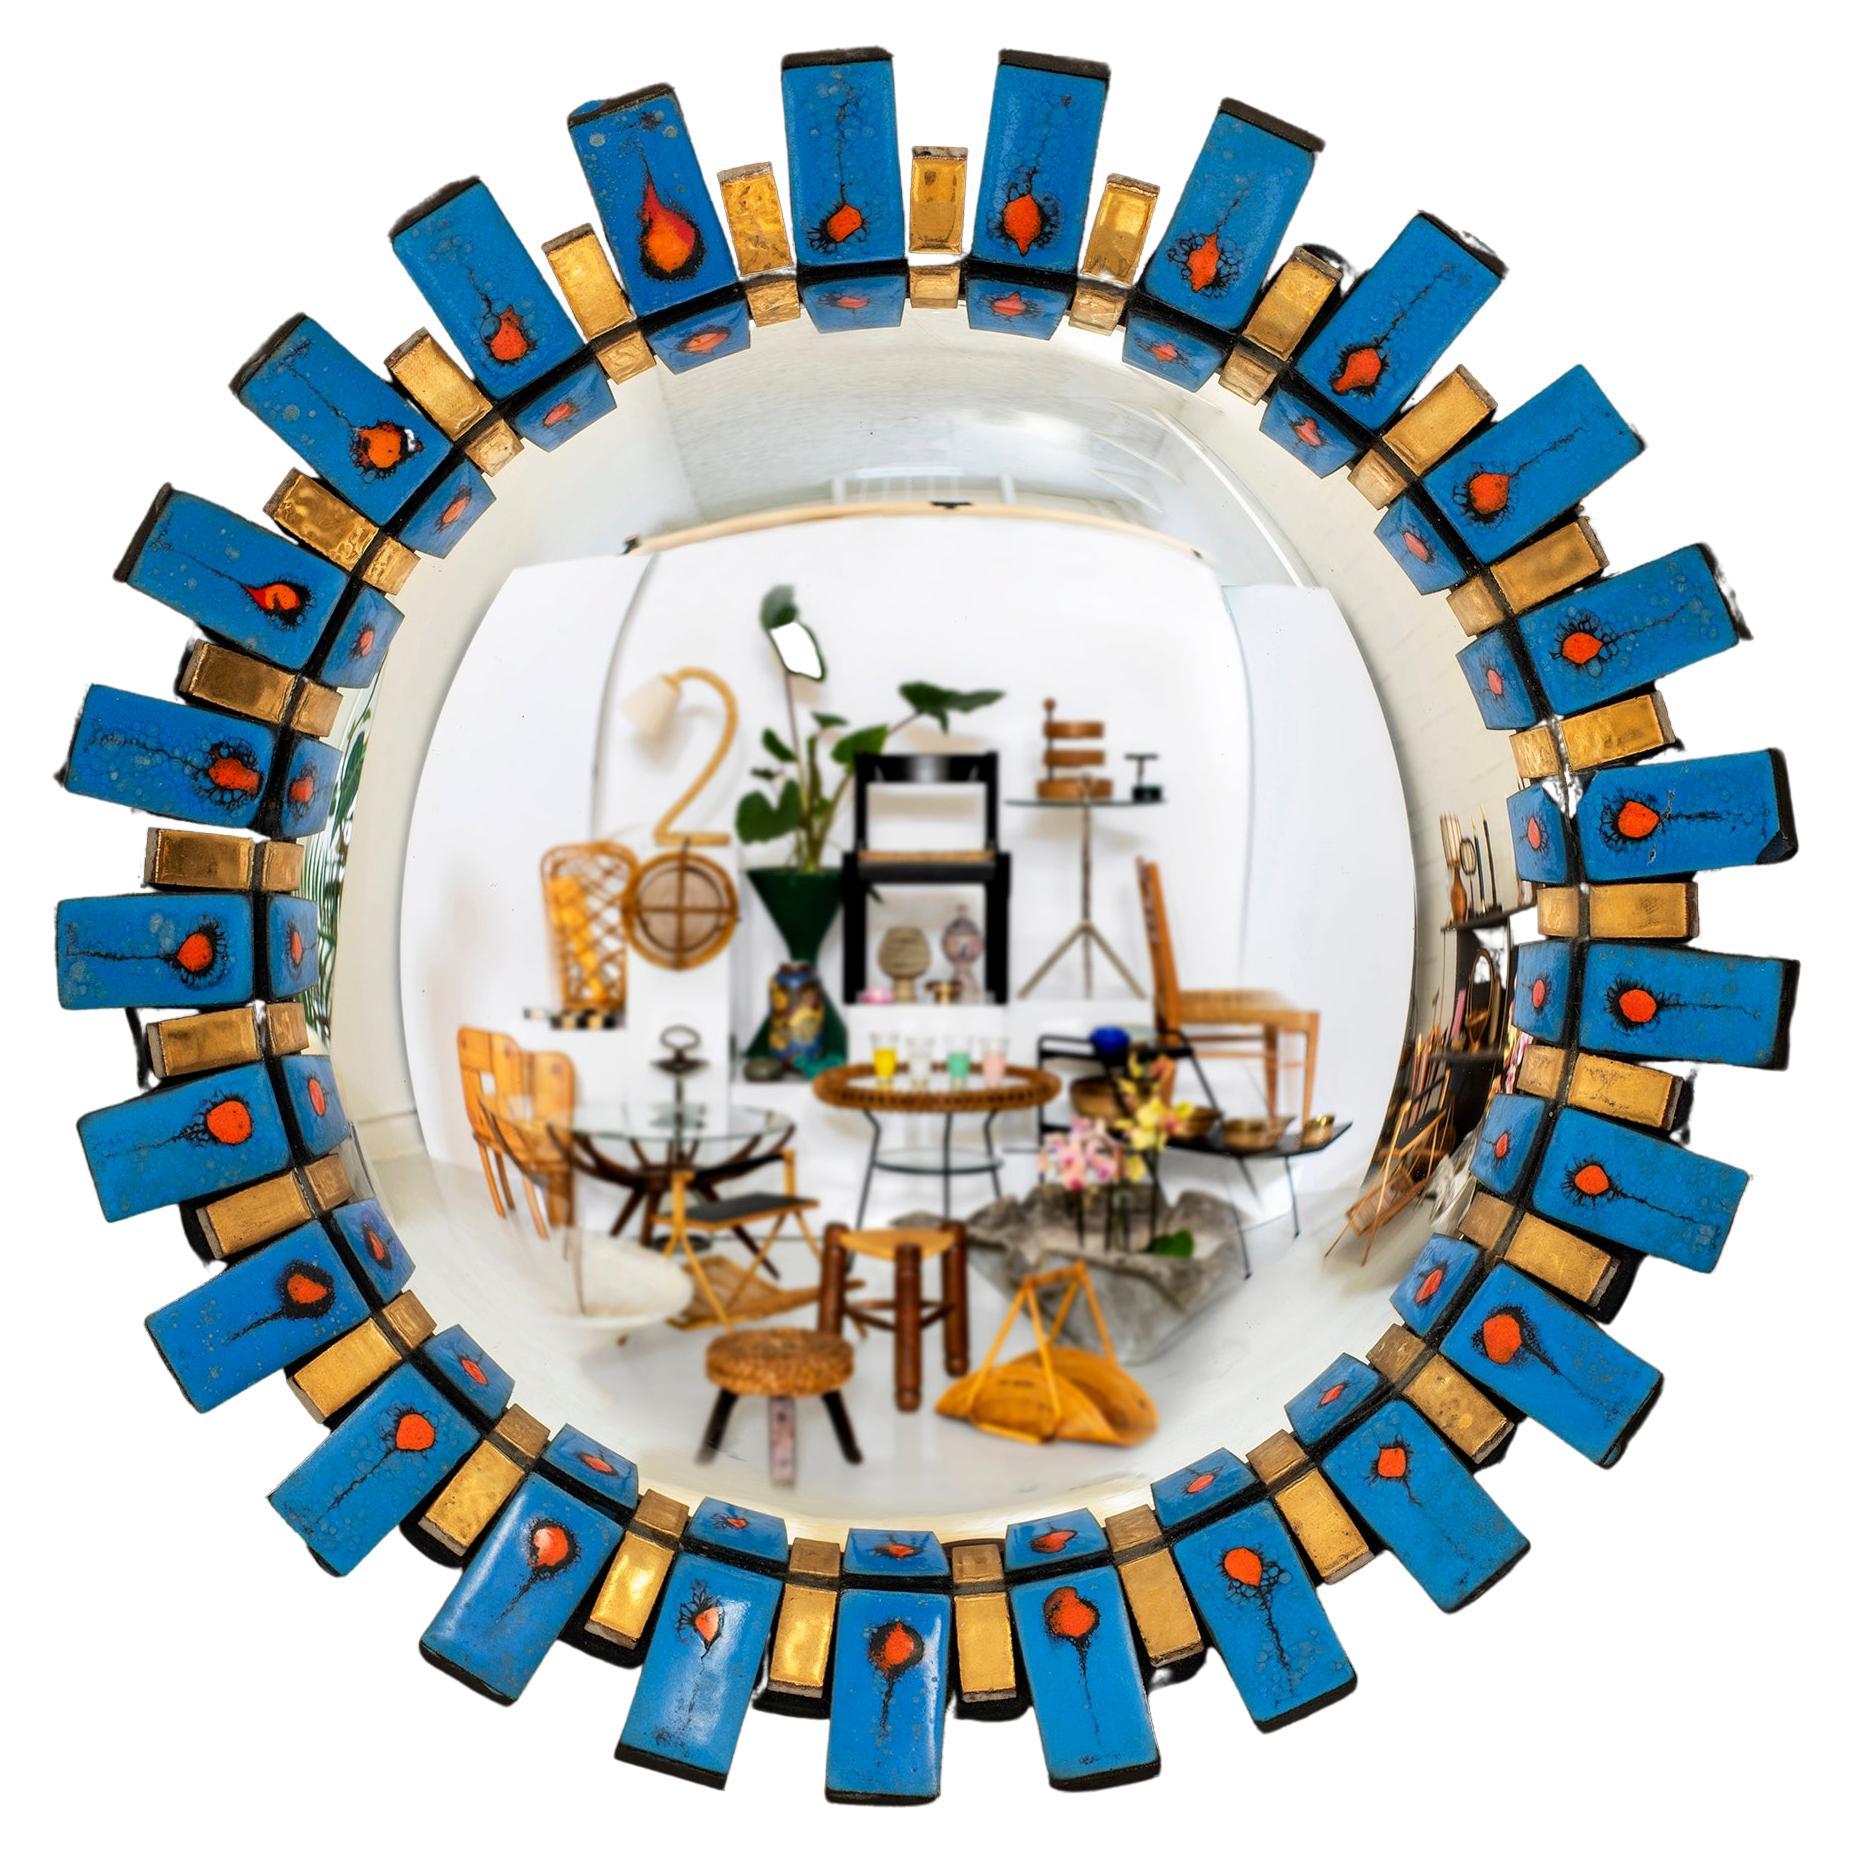 Miroir convexe en émail italien en forme de soleil 
Dans le style de François Lembo 
Italie, vers 1950
Miroir d'accent dramatique avec des couleurs, des textures et des motifs vibrants.
Un classique intemporel 
Légères marques de surface sur le